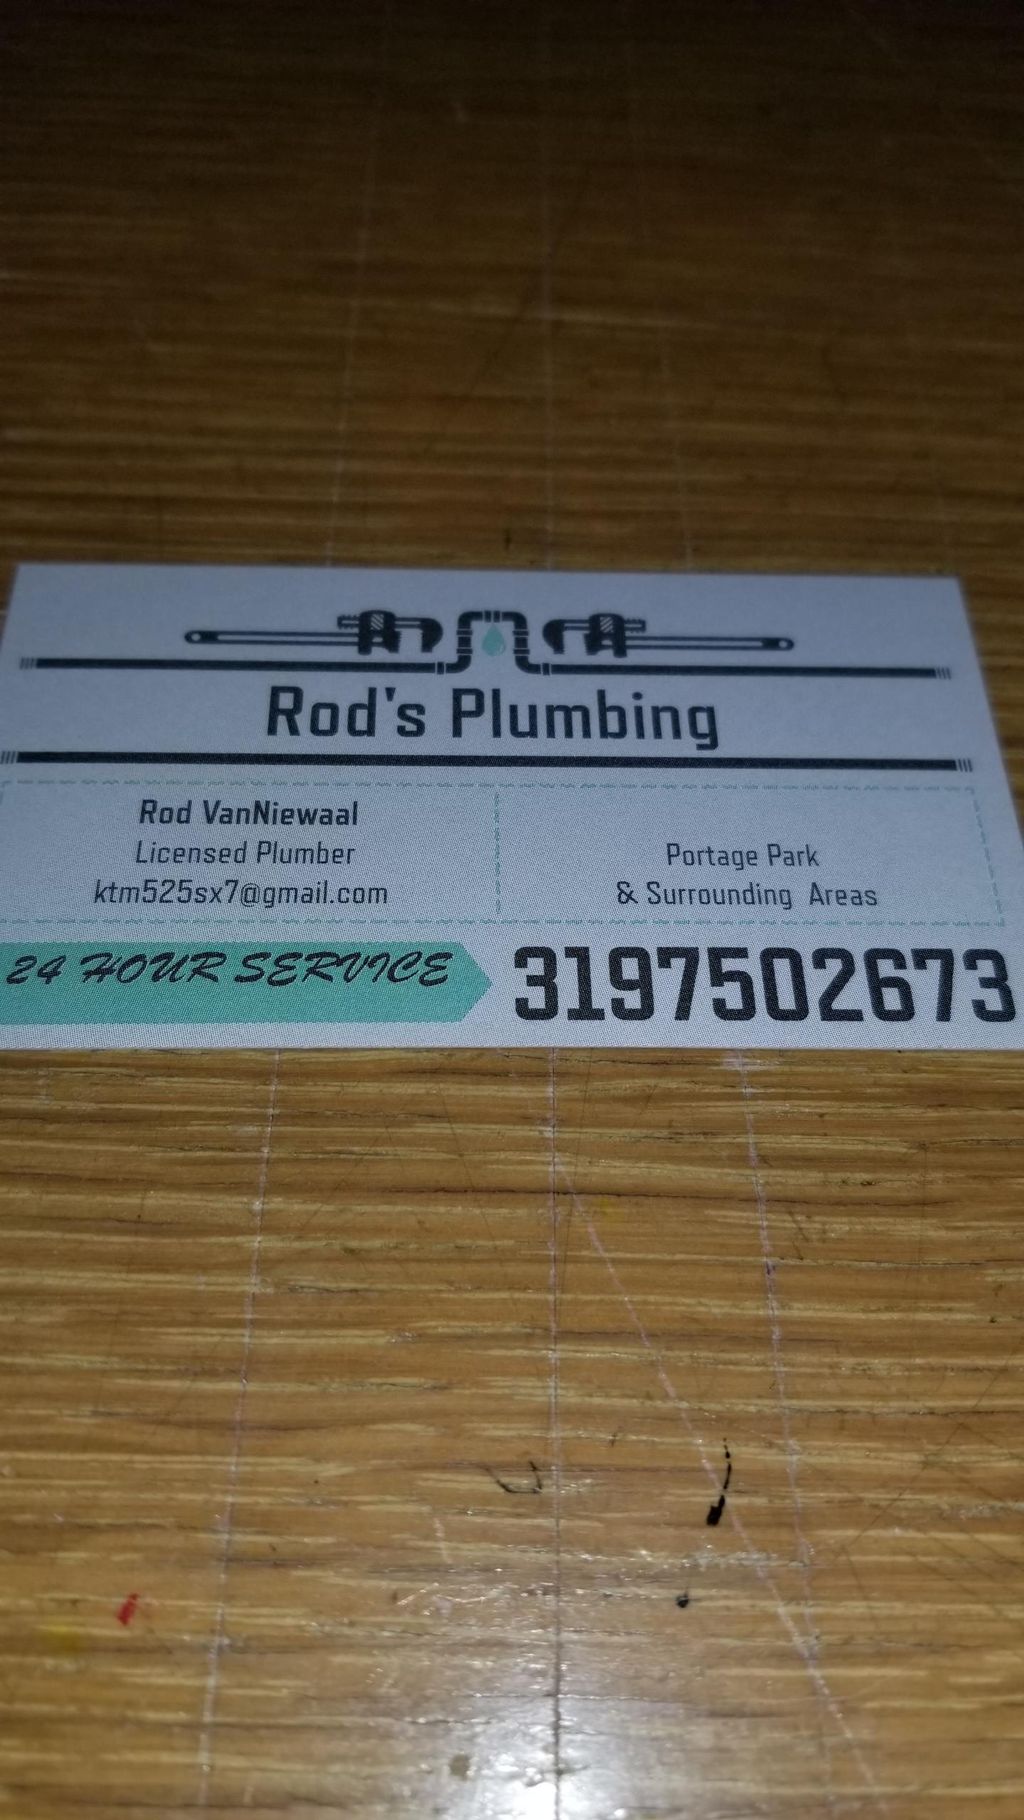 Rod's Plumbing